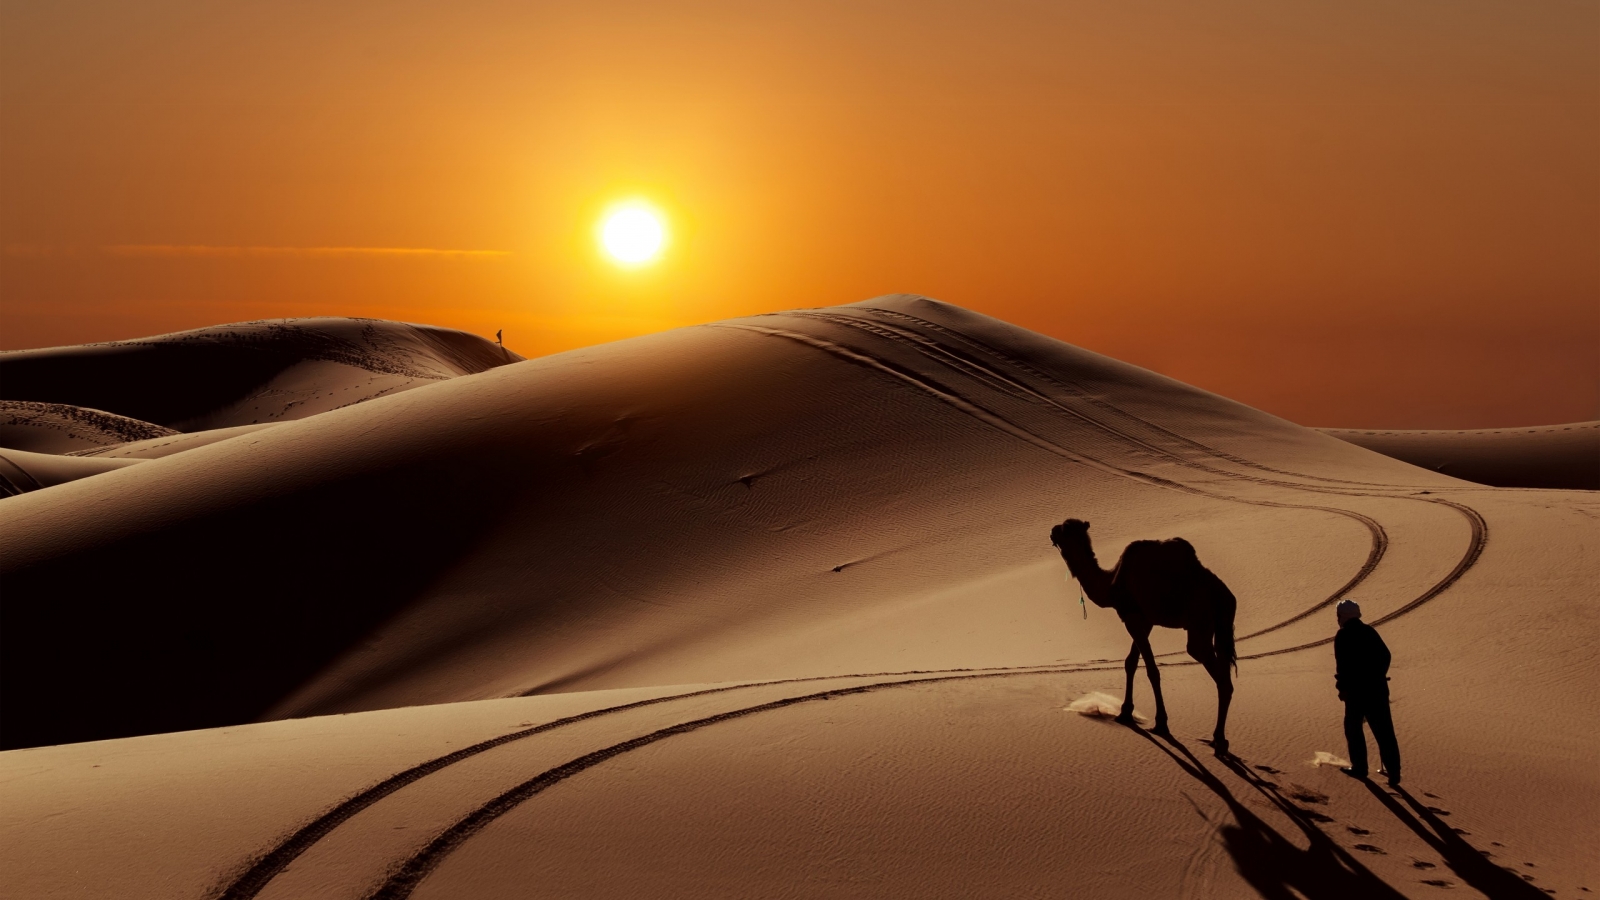 Sunset in Desert for 1600 x 900 HDTV resolution